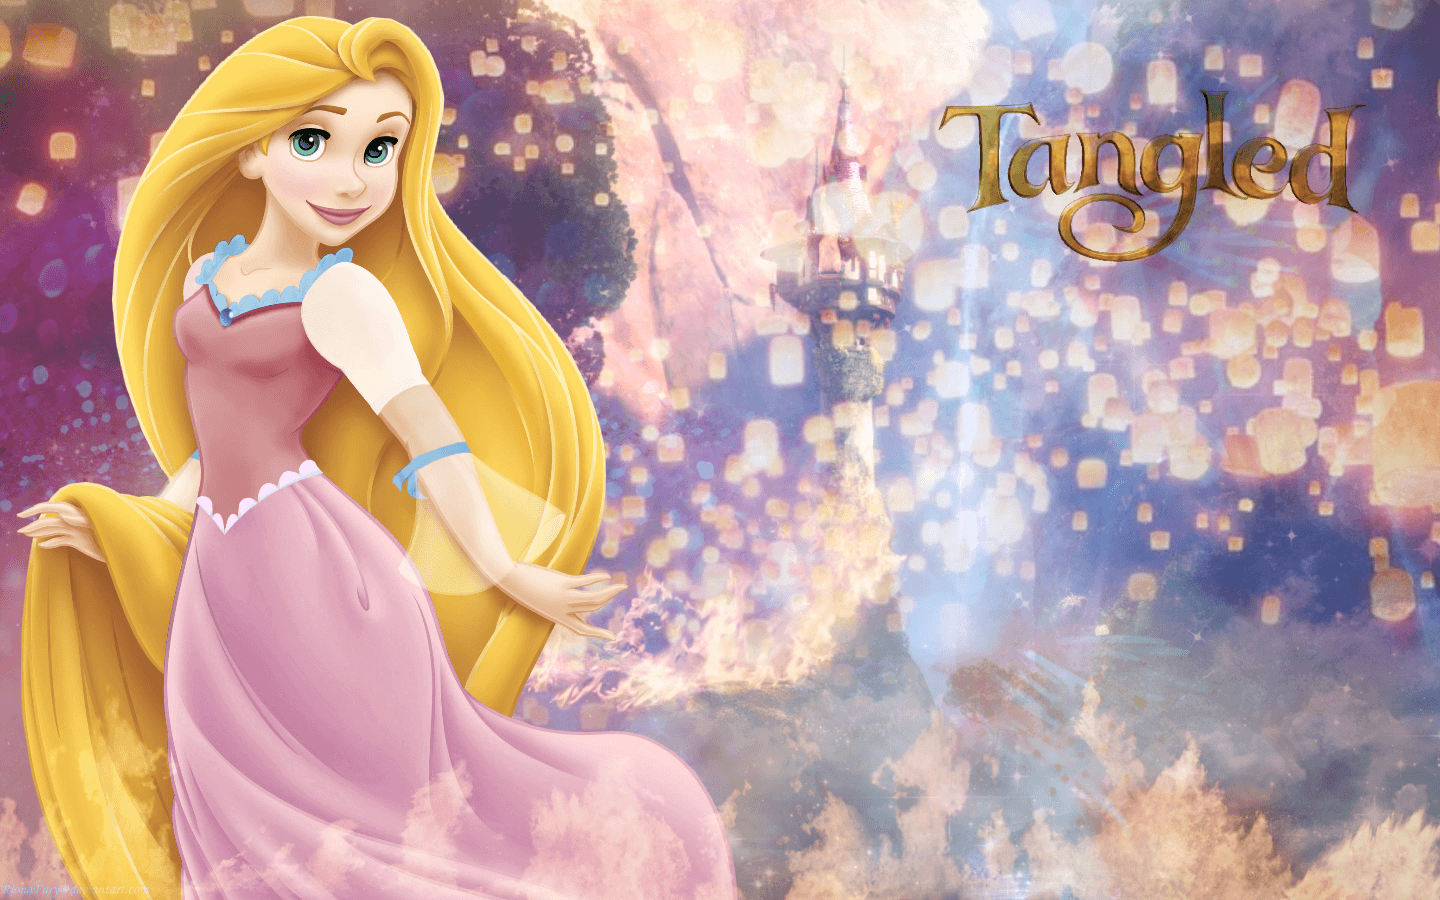 Disney Princess Wallpaper: Rapunzel's Tower. Disney princess wallpaper, Disney princess rapunzel, Princess wallpaper